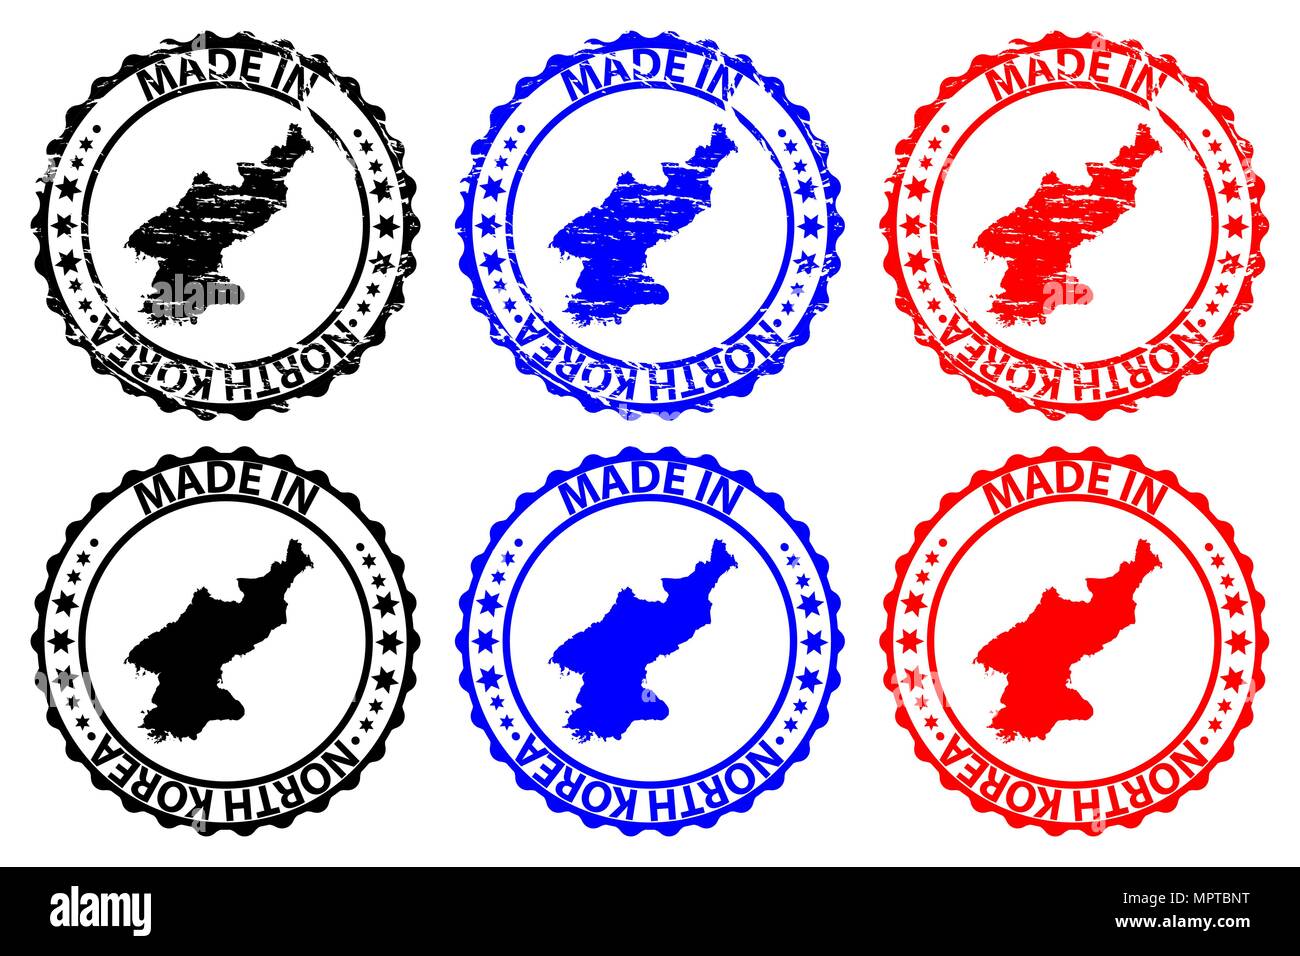 Faites en Corée du Nord - timbres en caoutchouc - vecteur, République populaire démocratique de Corée (RPDC) Carte - noir, bleu et rouge Illustration de Vecteur